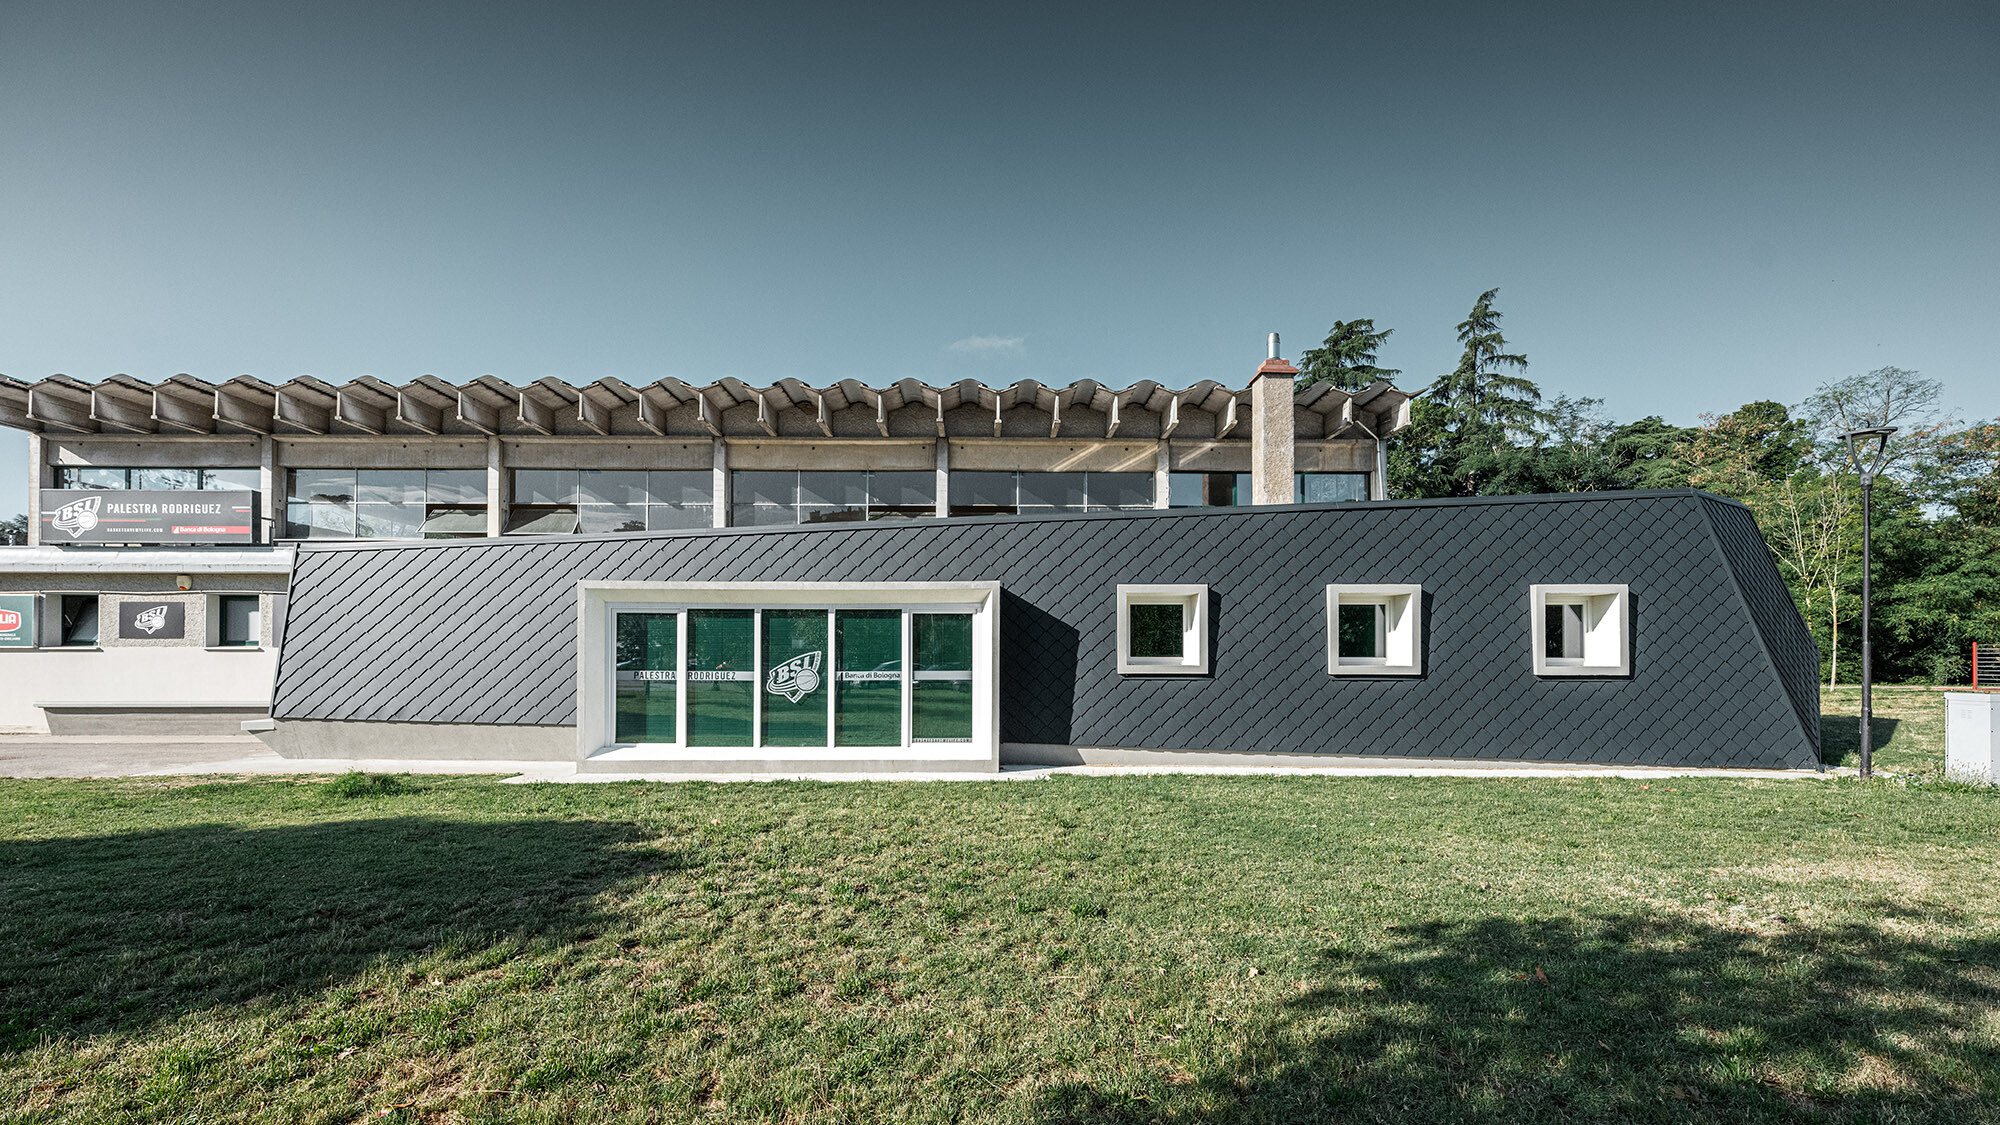 Ansicht einer modernen Turnhalle in Bologna, Italien, mit einer Fassade aus anthrazitfarbenen, rautenförmigen Aluminiumplatten von PREFA in 20x20 cm Format, vor einem bewaldeten Hintergrund und unter klarem Himmel.